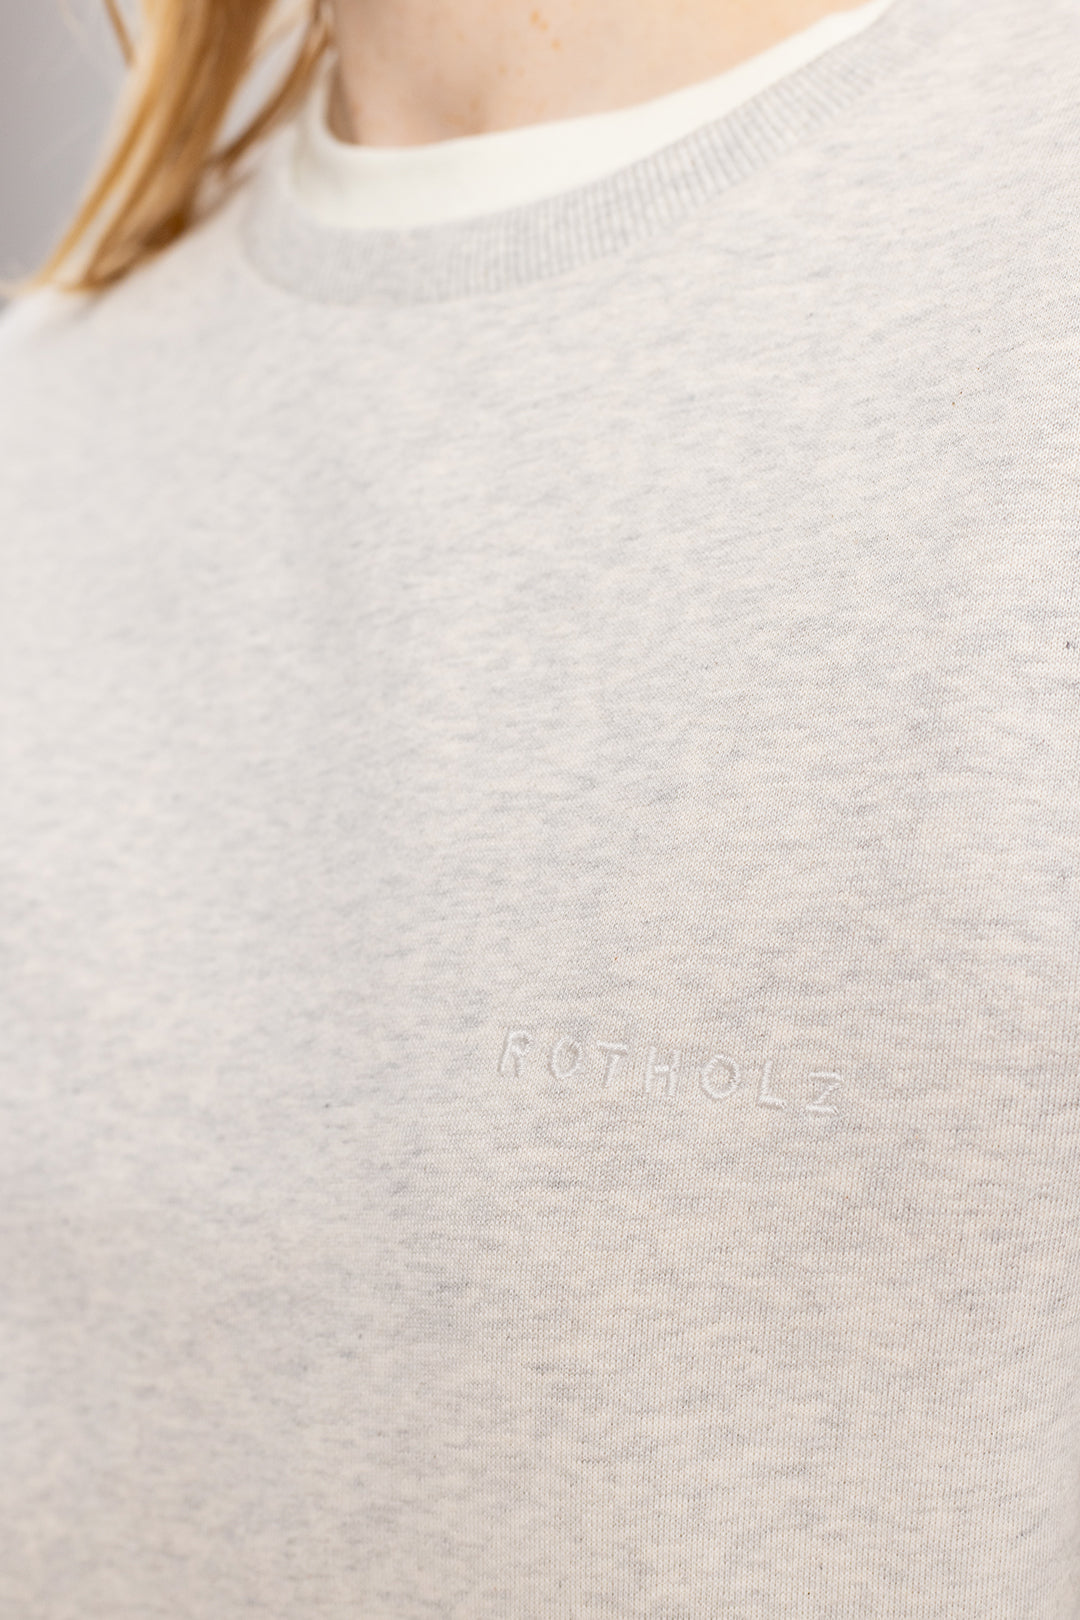 Logo pull gris clair en coton biologique de Rotholz